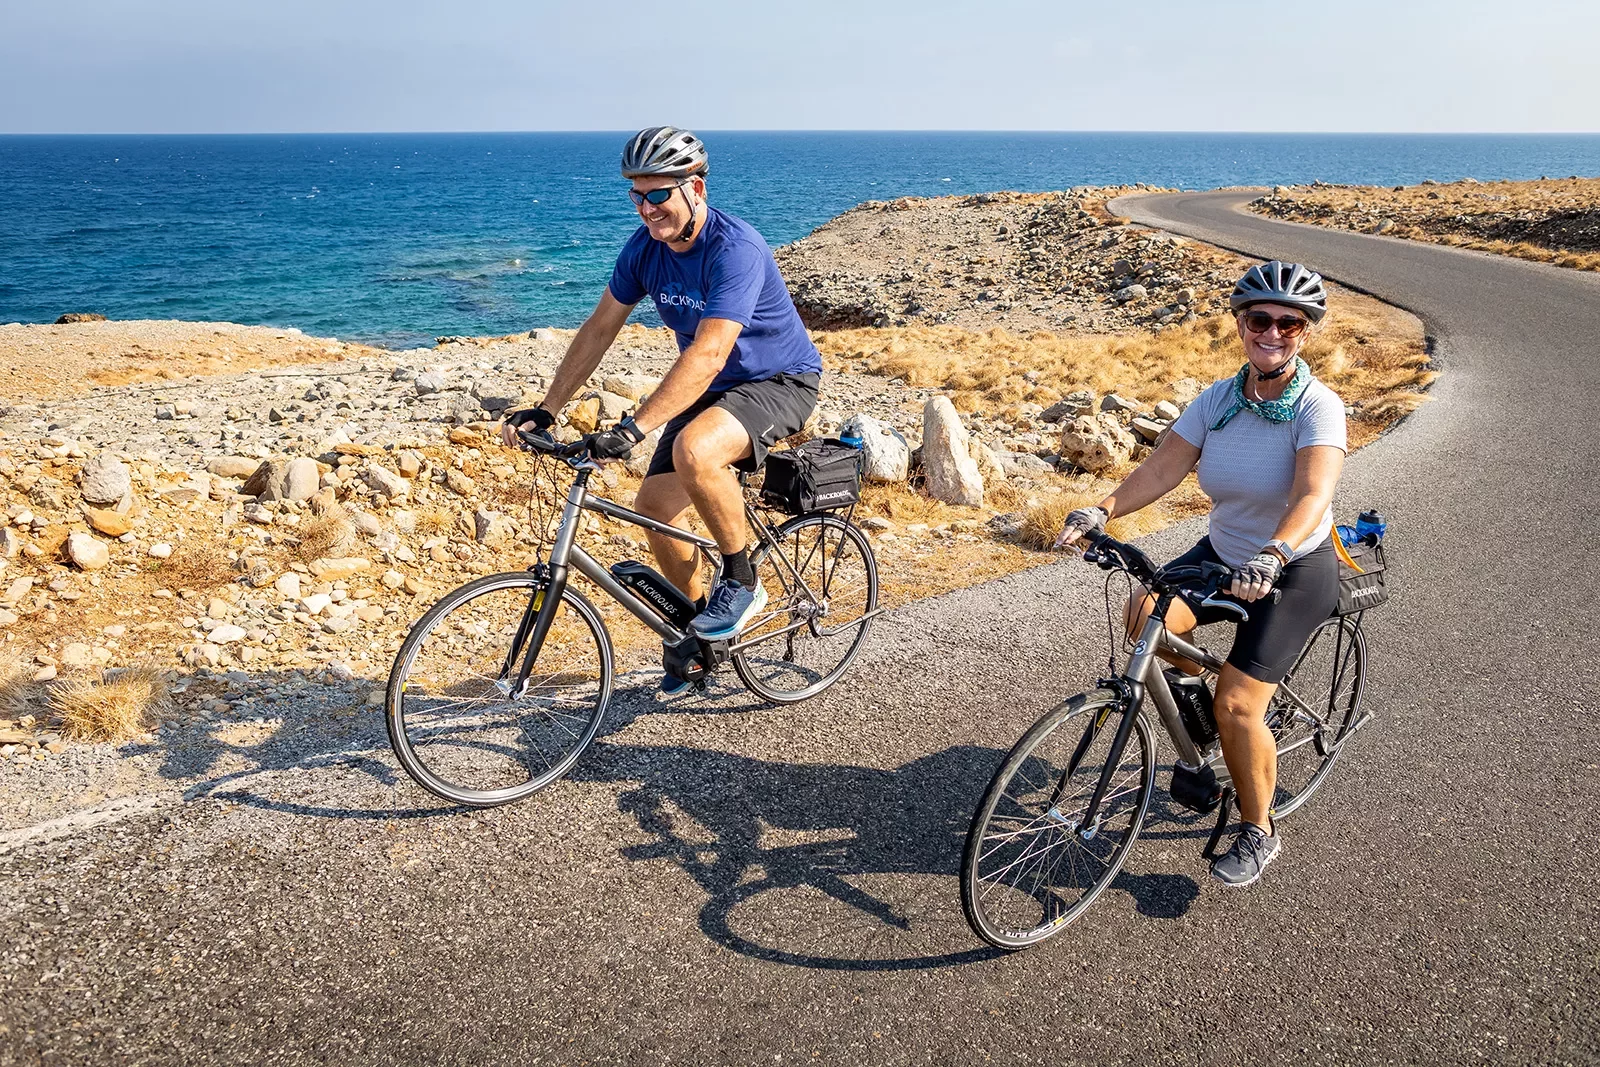 Two guests biking alongside golden coastline, smiling at camera.